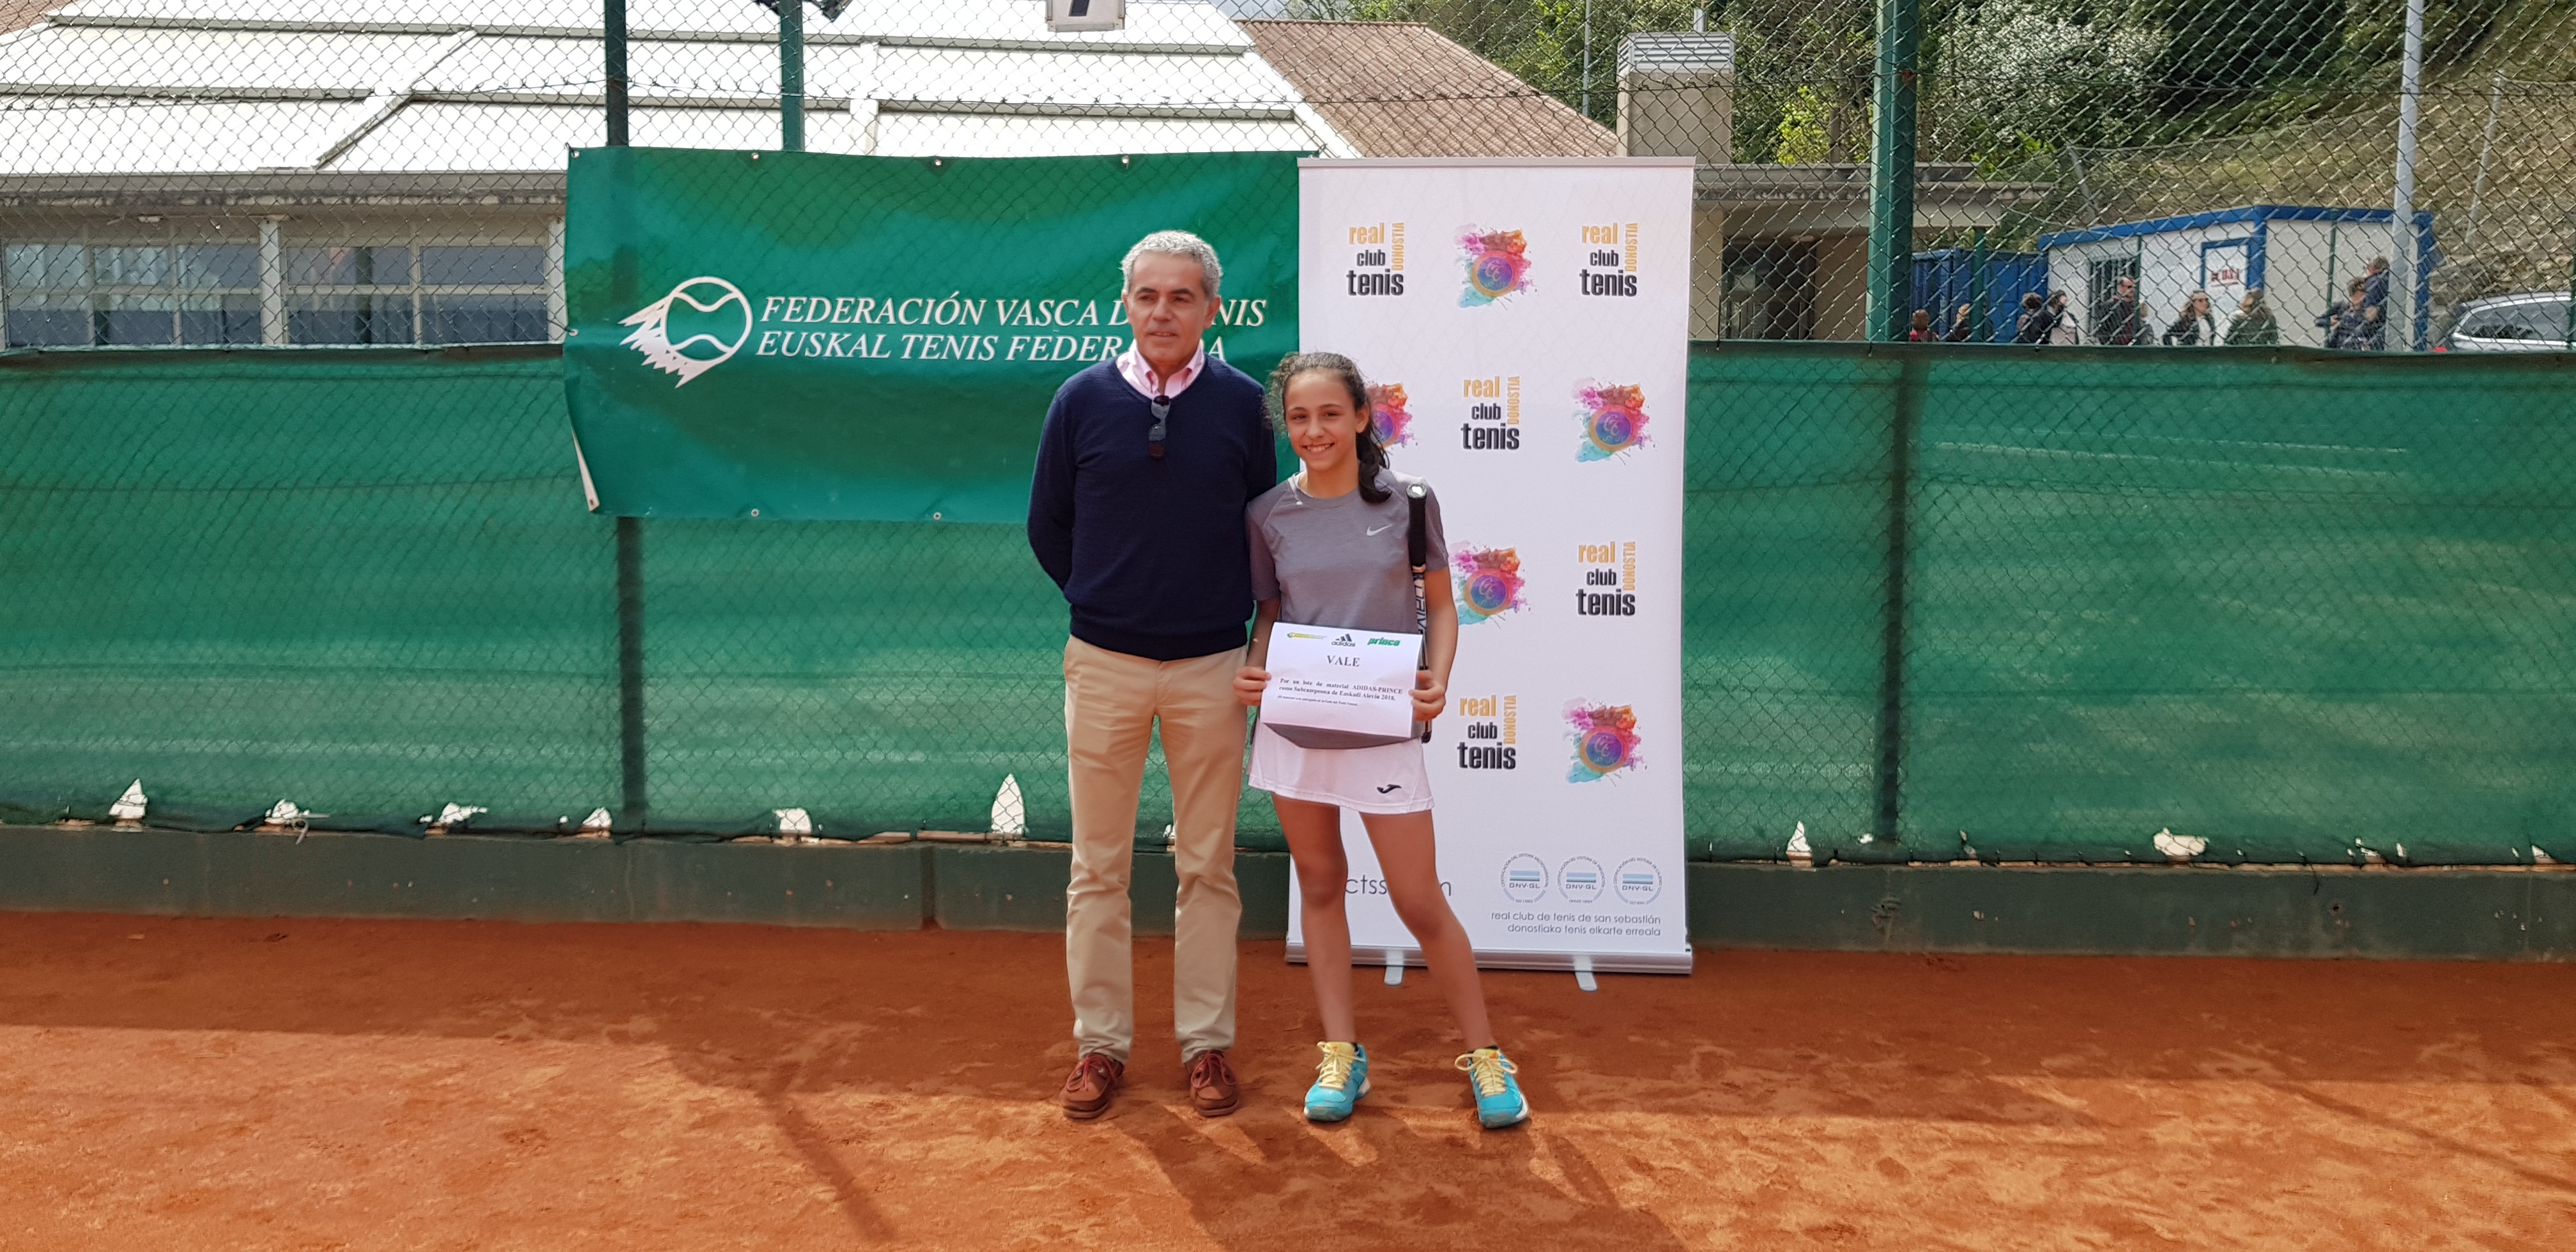 Campeonato de Euskadi Alevín Femenino 2018 finalistas